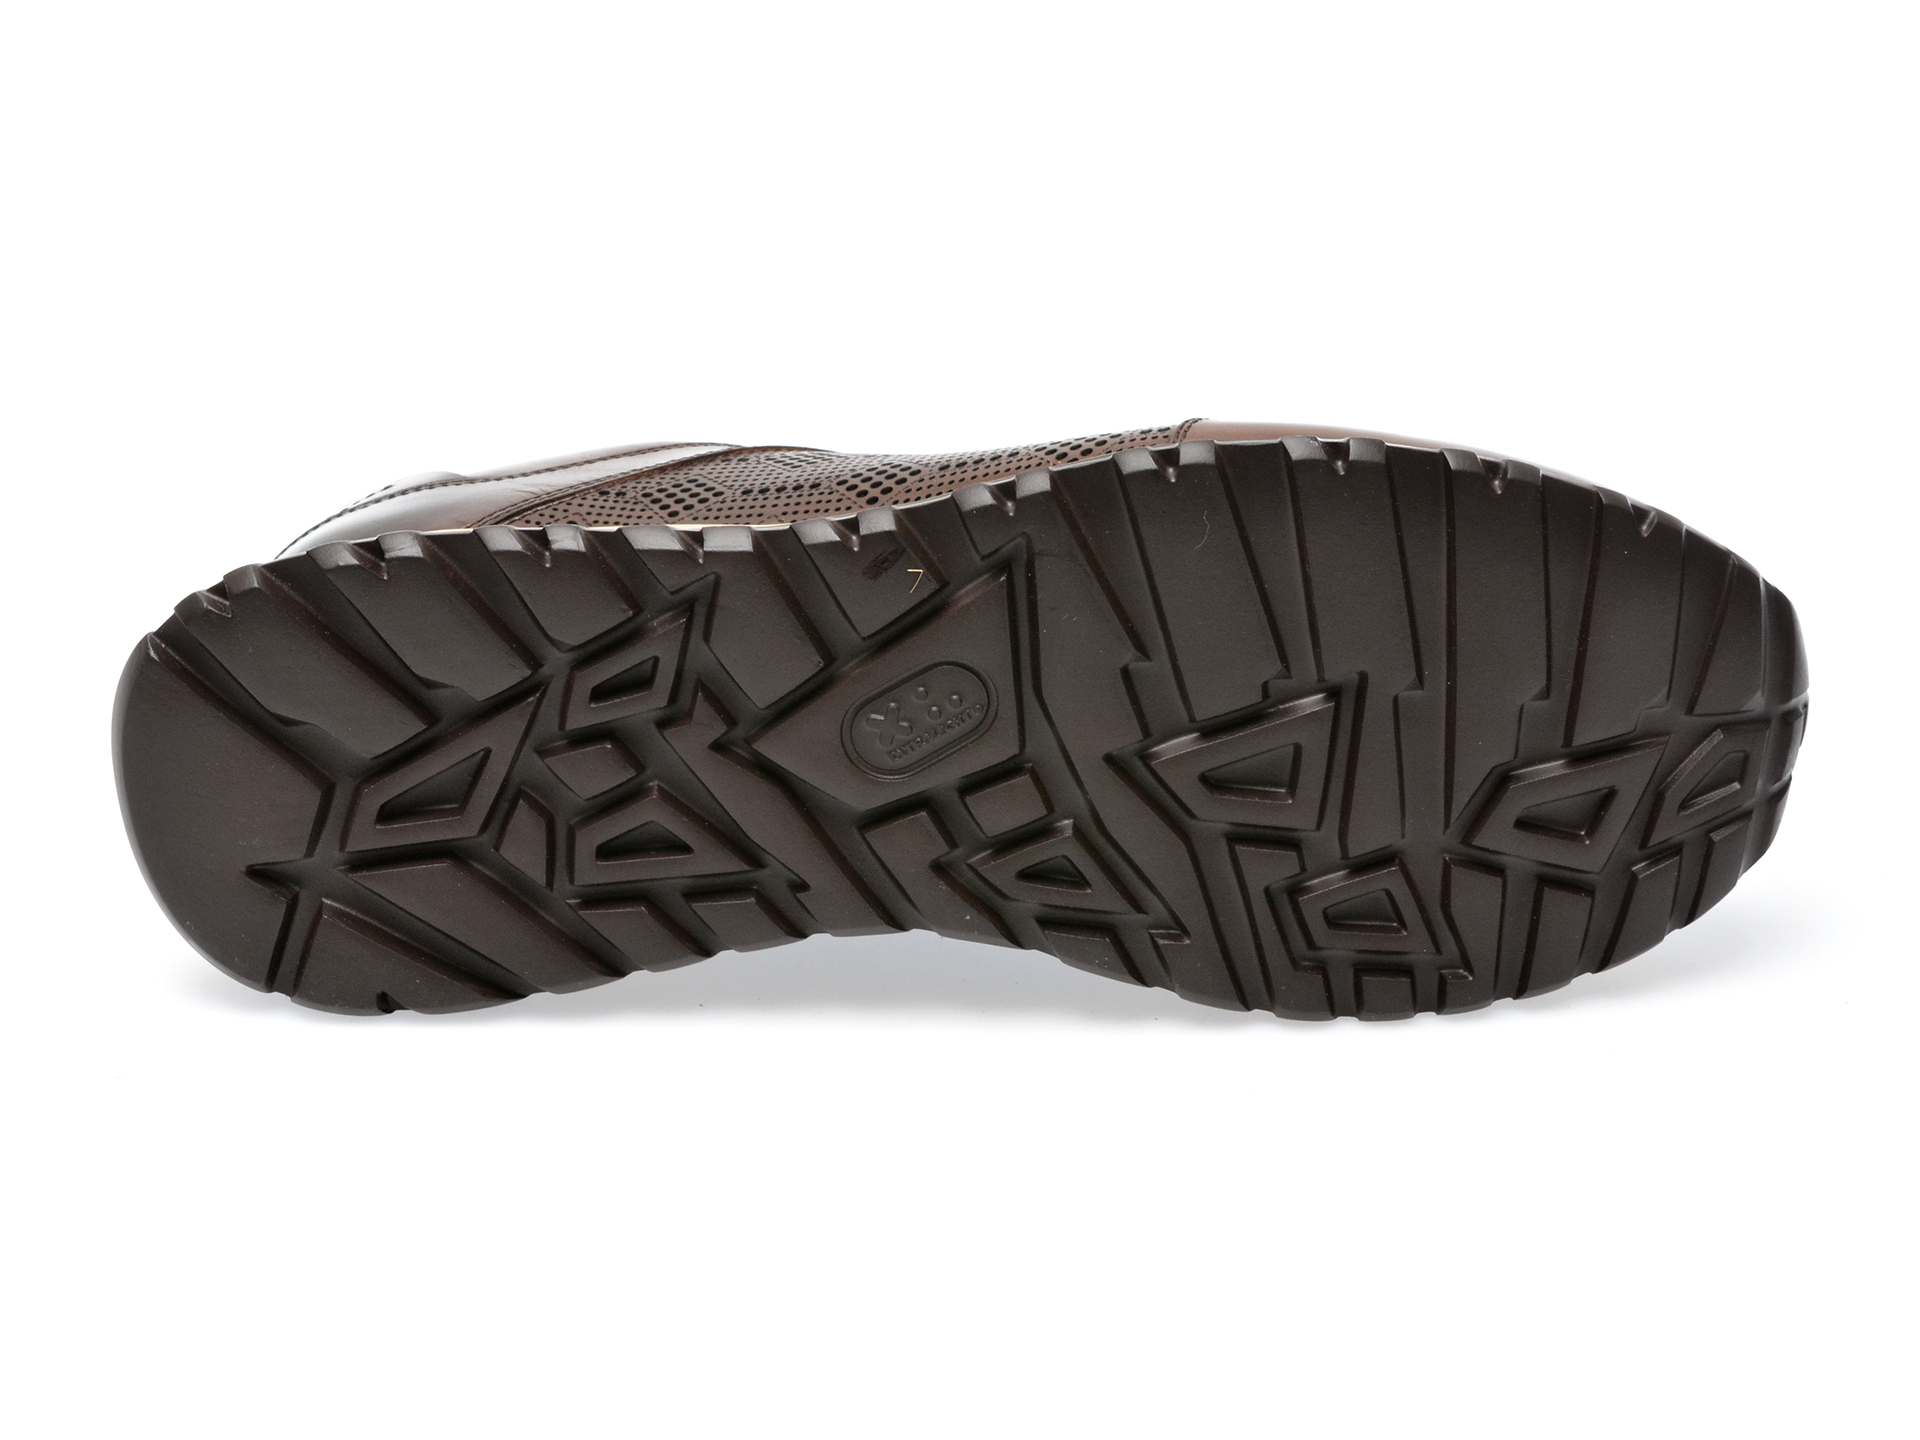 Pantofi LE COLONEL maro, 49438, din piele naturala